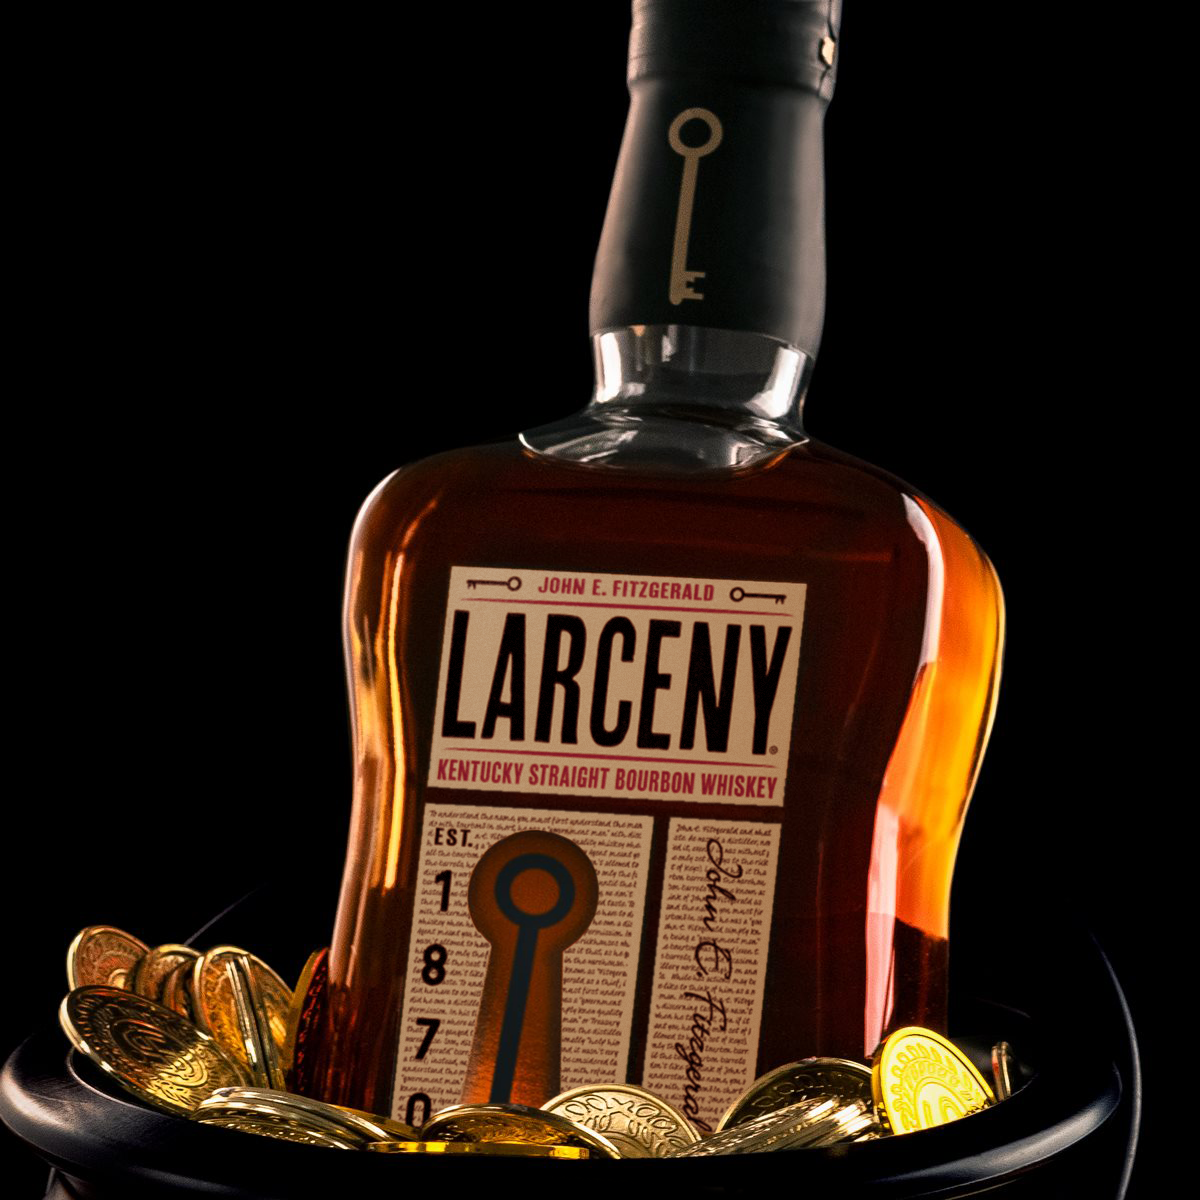 Larceny Kentucky Straight Bourbon Whisky - Image